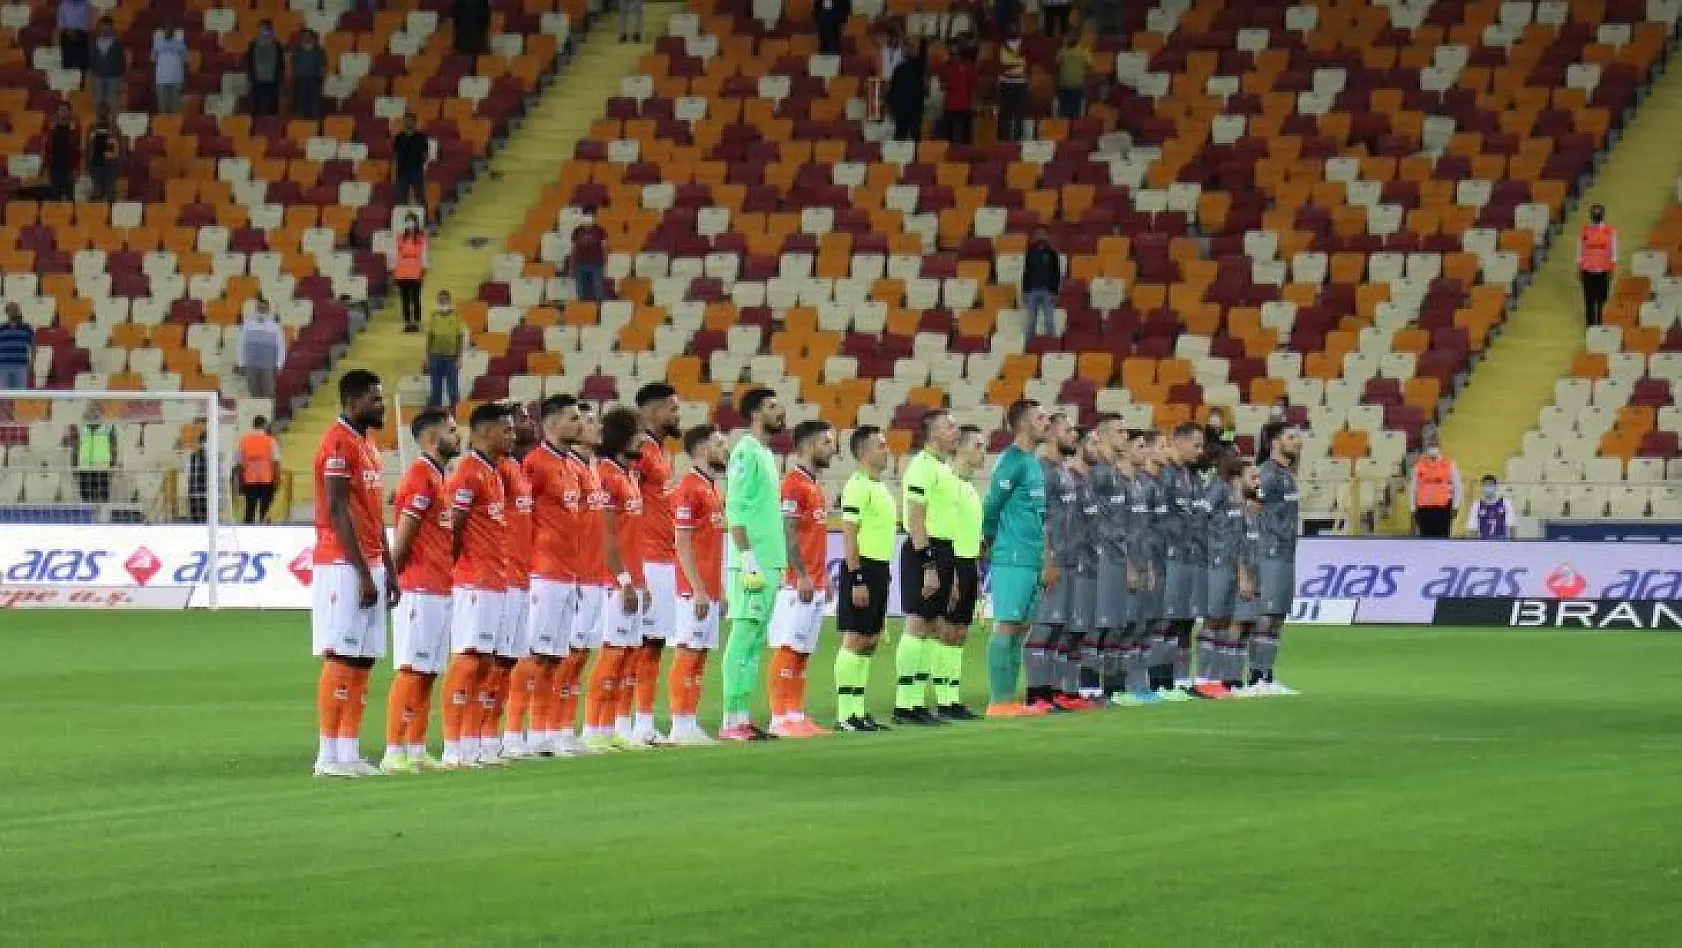 Süper Lig: Yeni Malatyaspor: 3 - Fatih Karagümrük: 2 (İlk yarı)